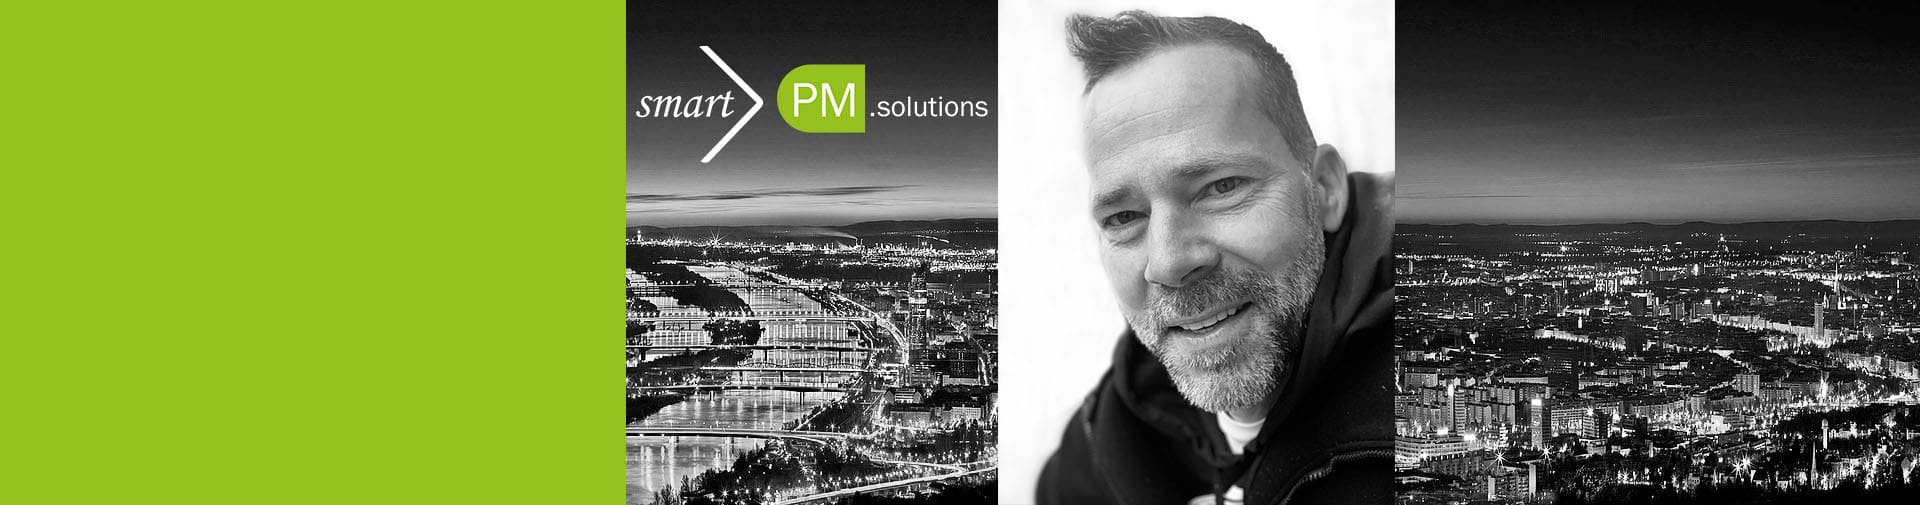 Alexander Springer joins smartPM.solutions